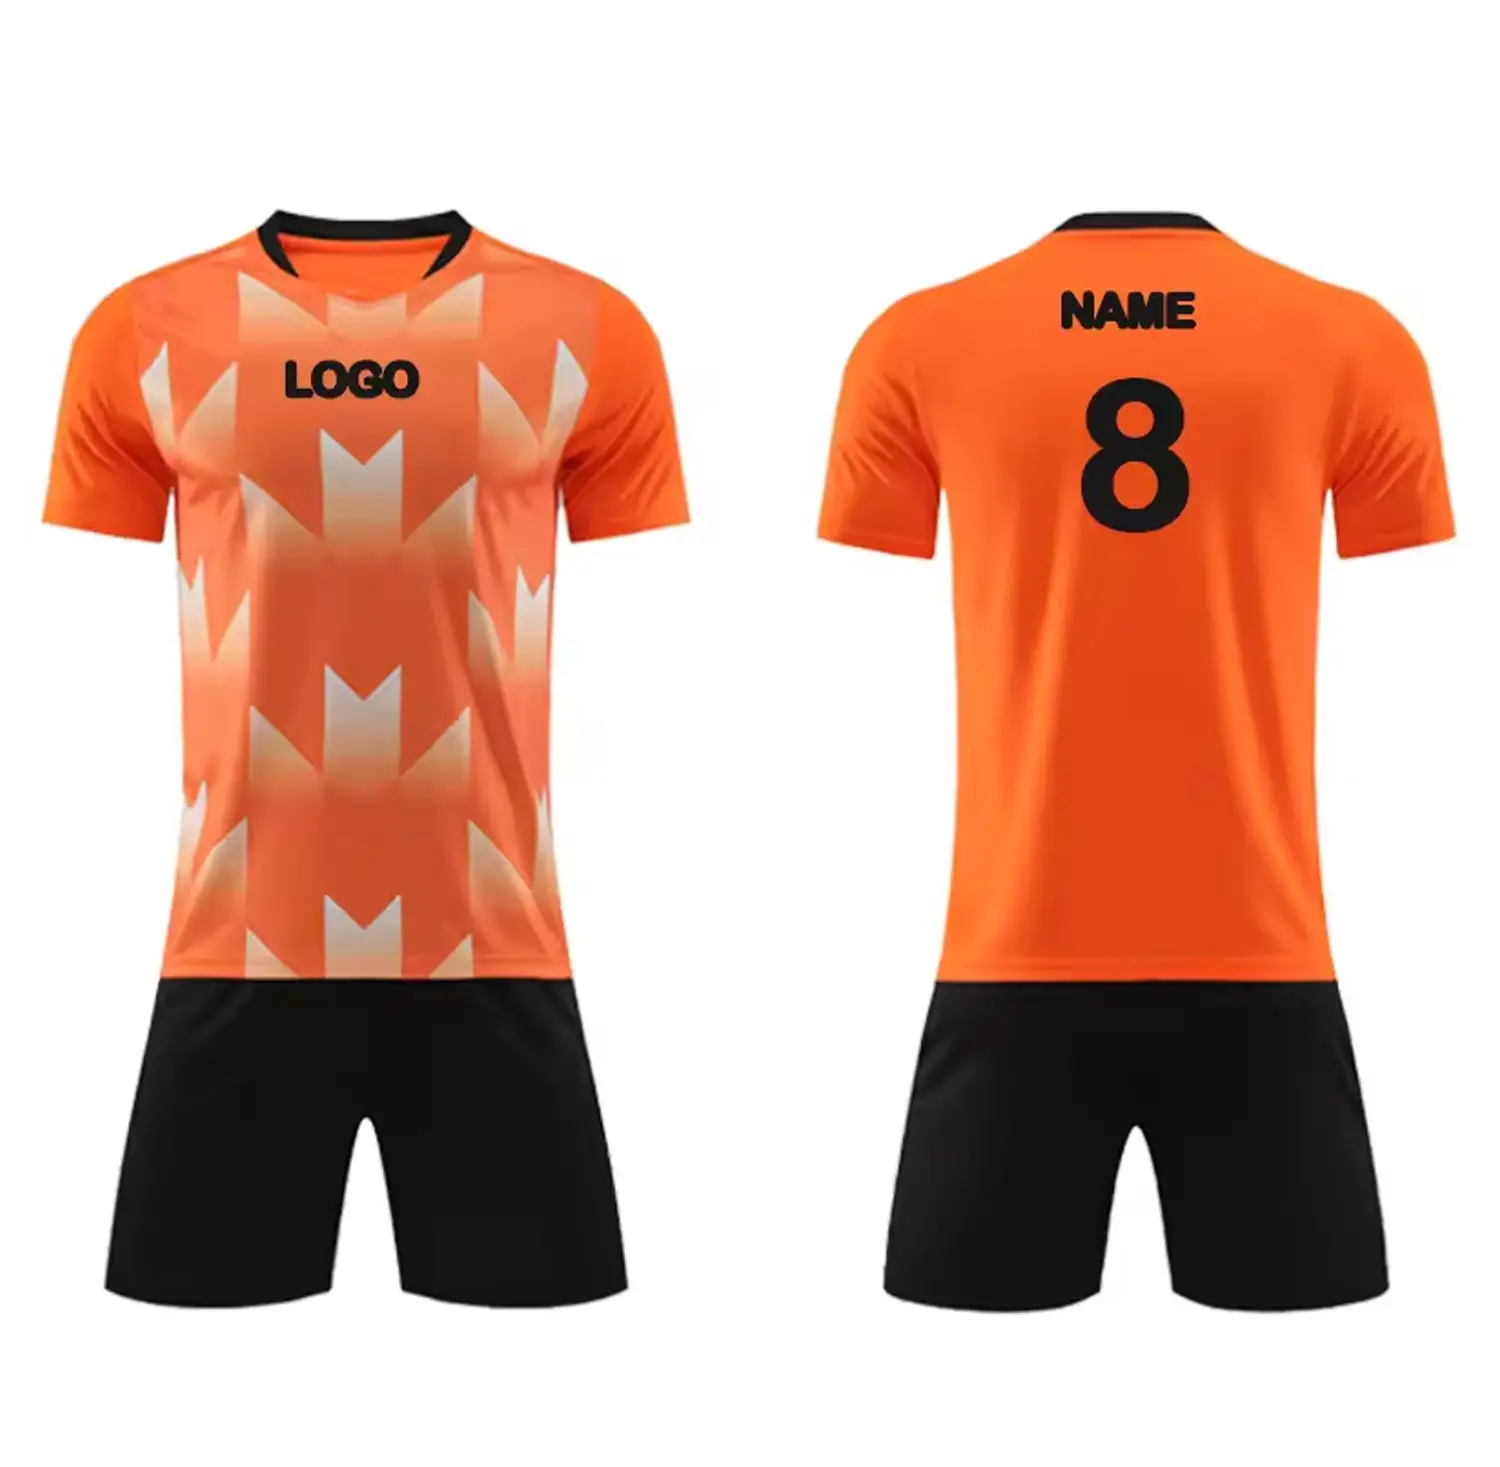 Camiseta de fútbol de poliéster sublimada con logotipo personalizado naranja y negro.